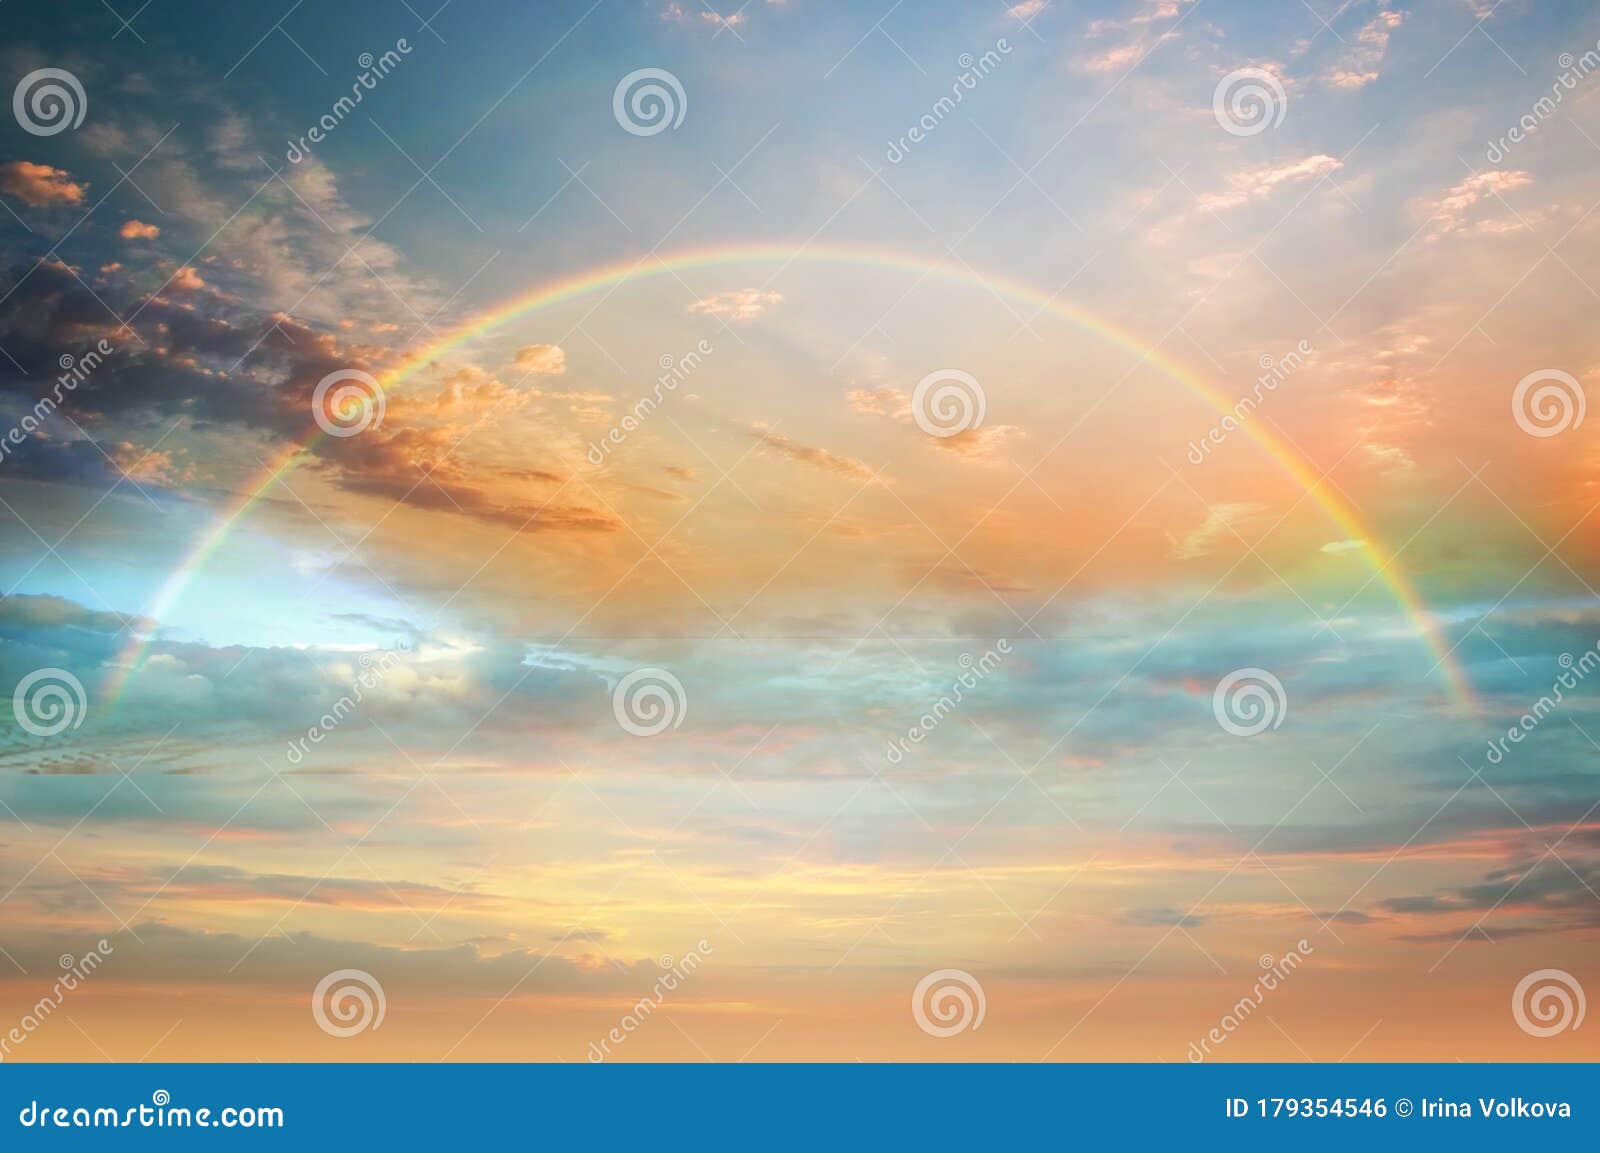 Закат rainbow красочный на природе летний пейзаж голубого отражения моря воды горизонта облаков неба розового желтого красивой